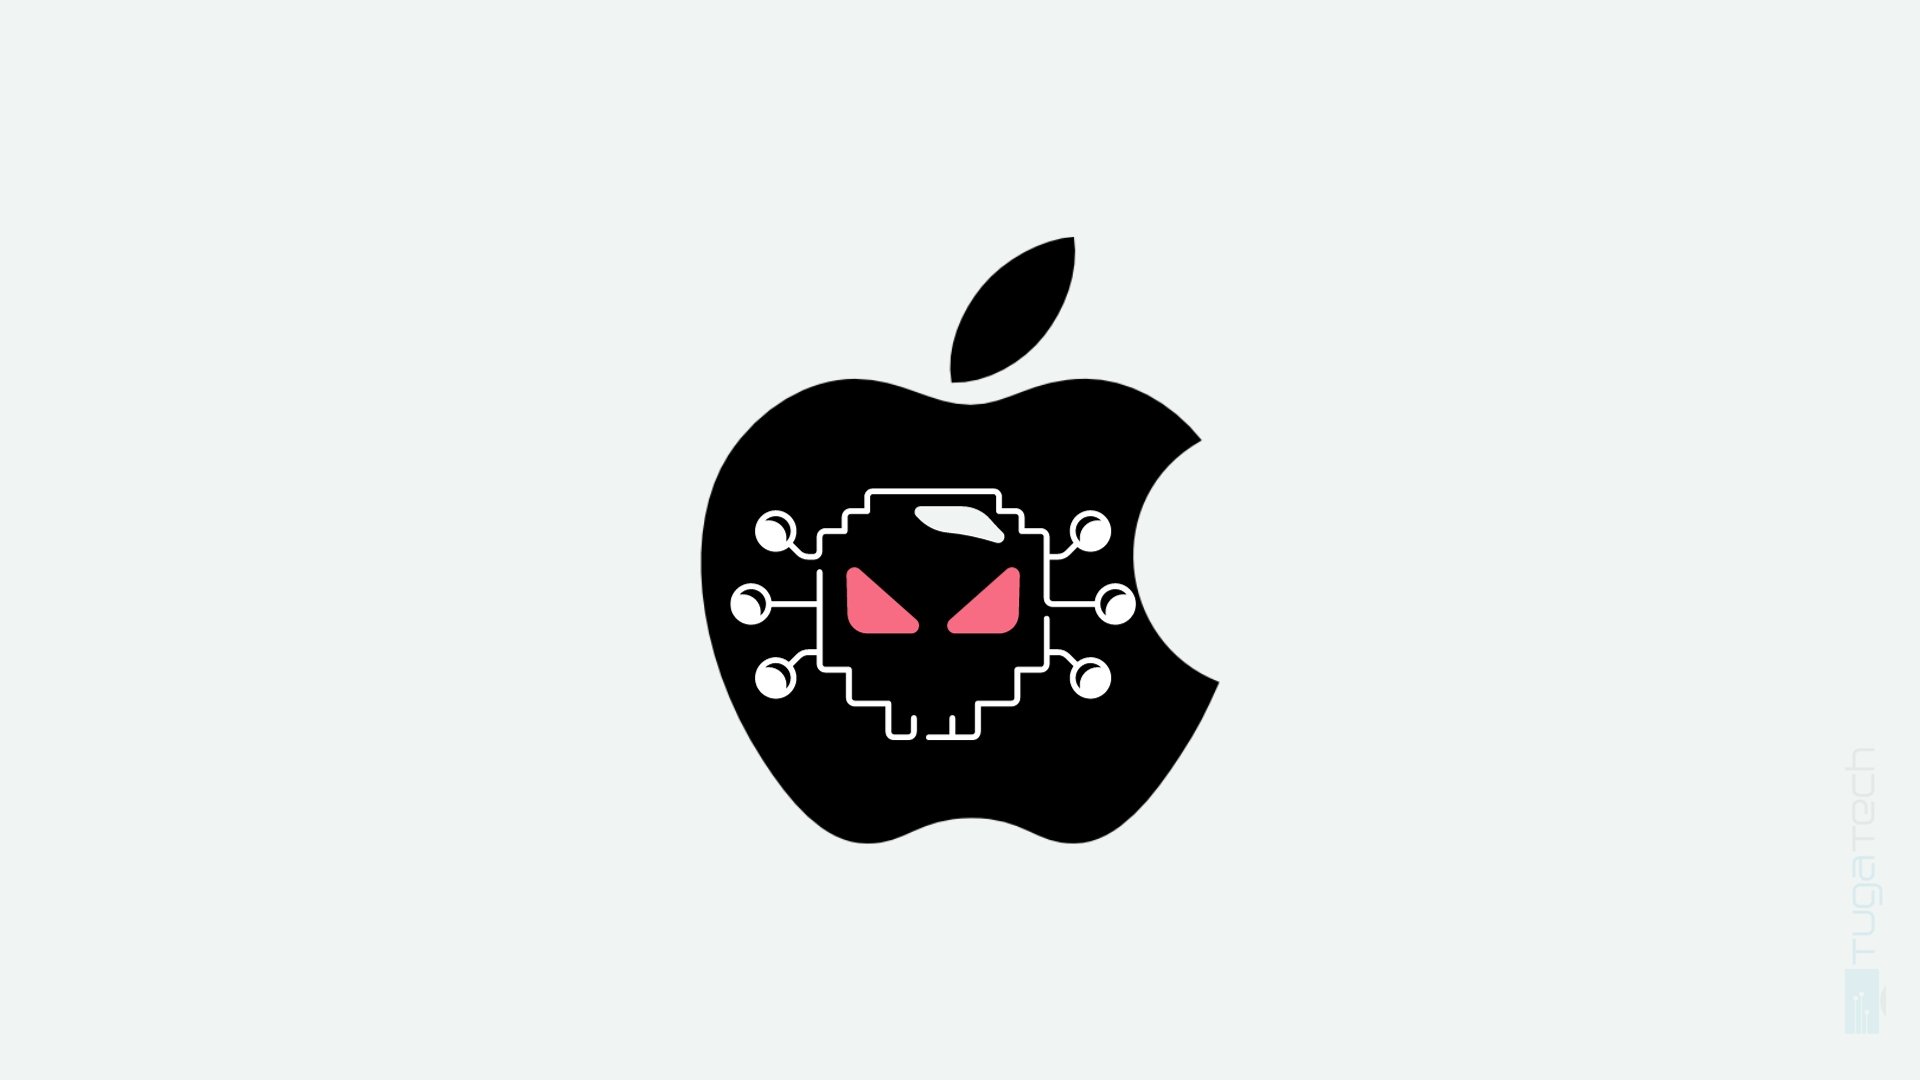 malware em logo da apple